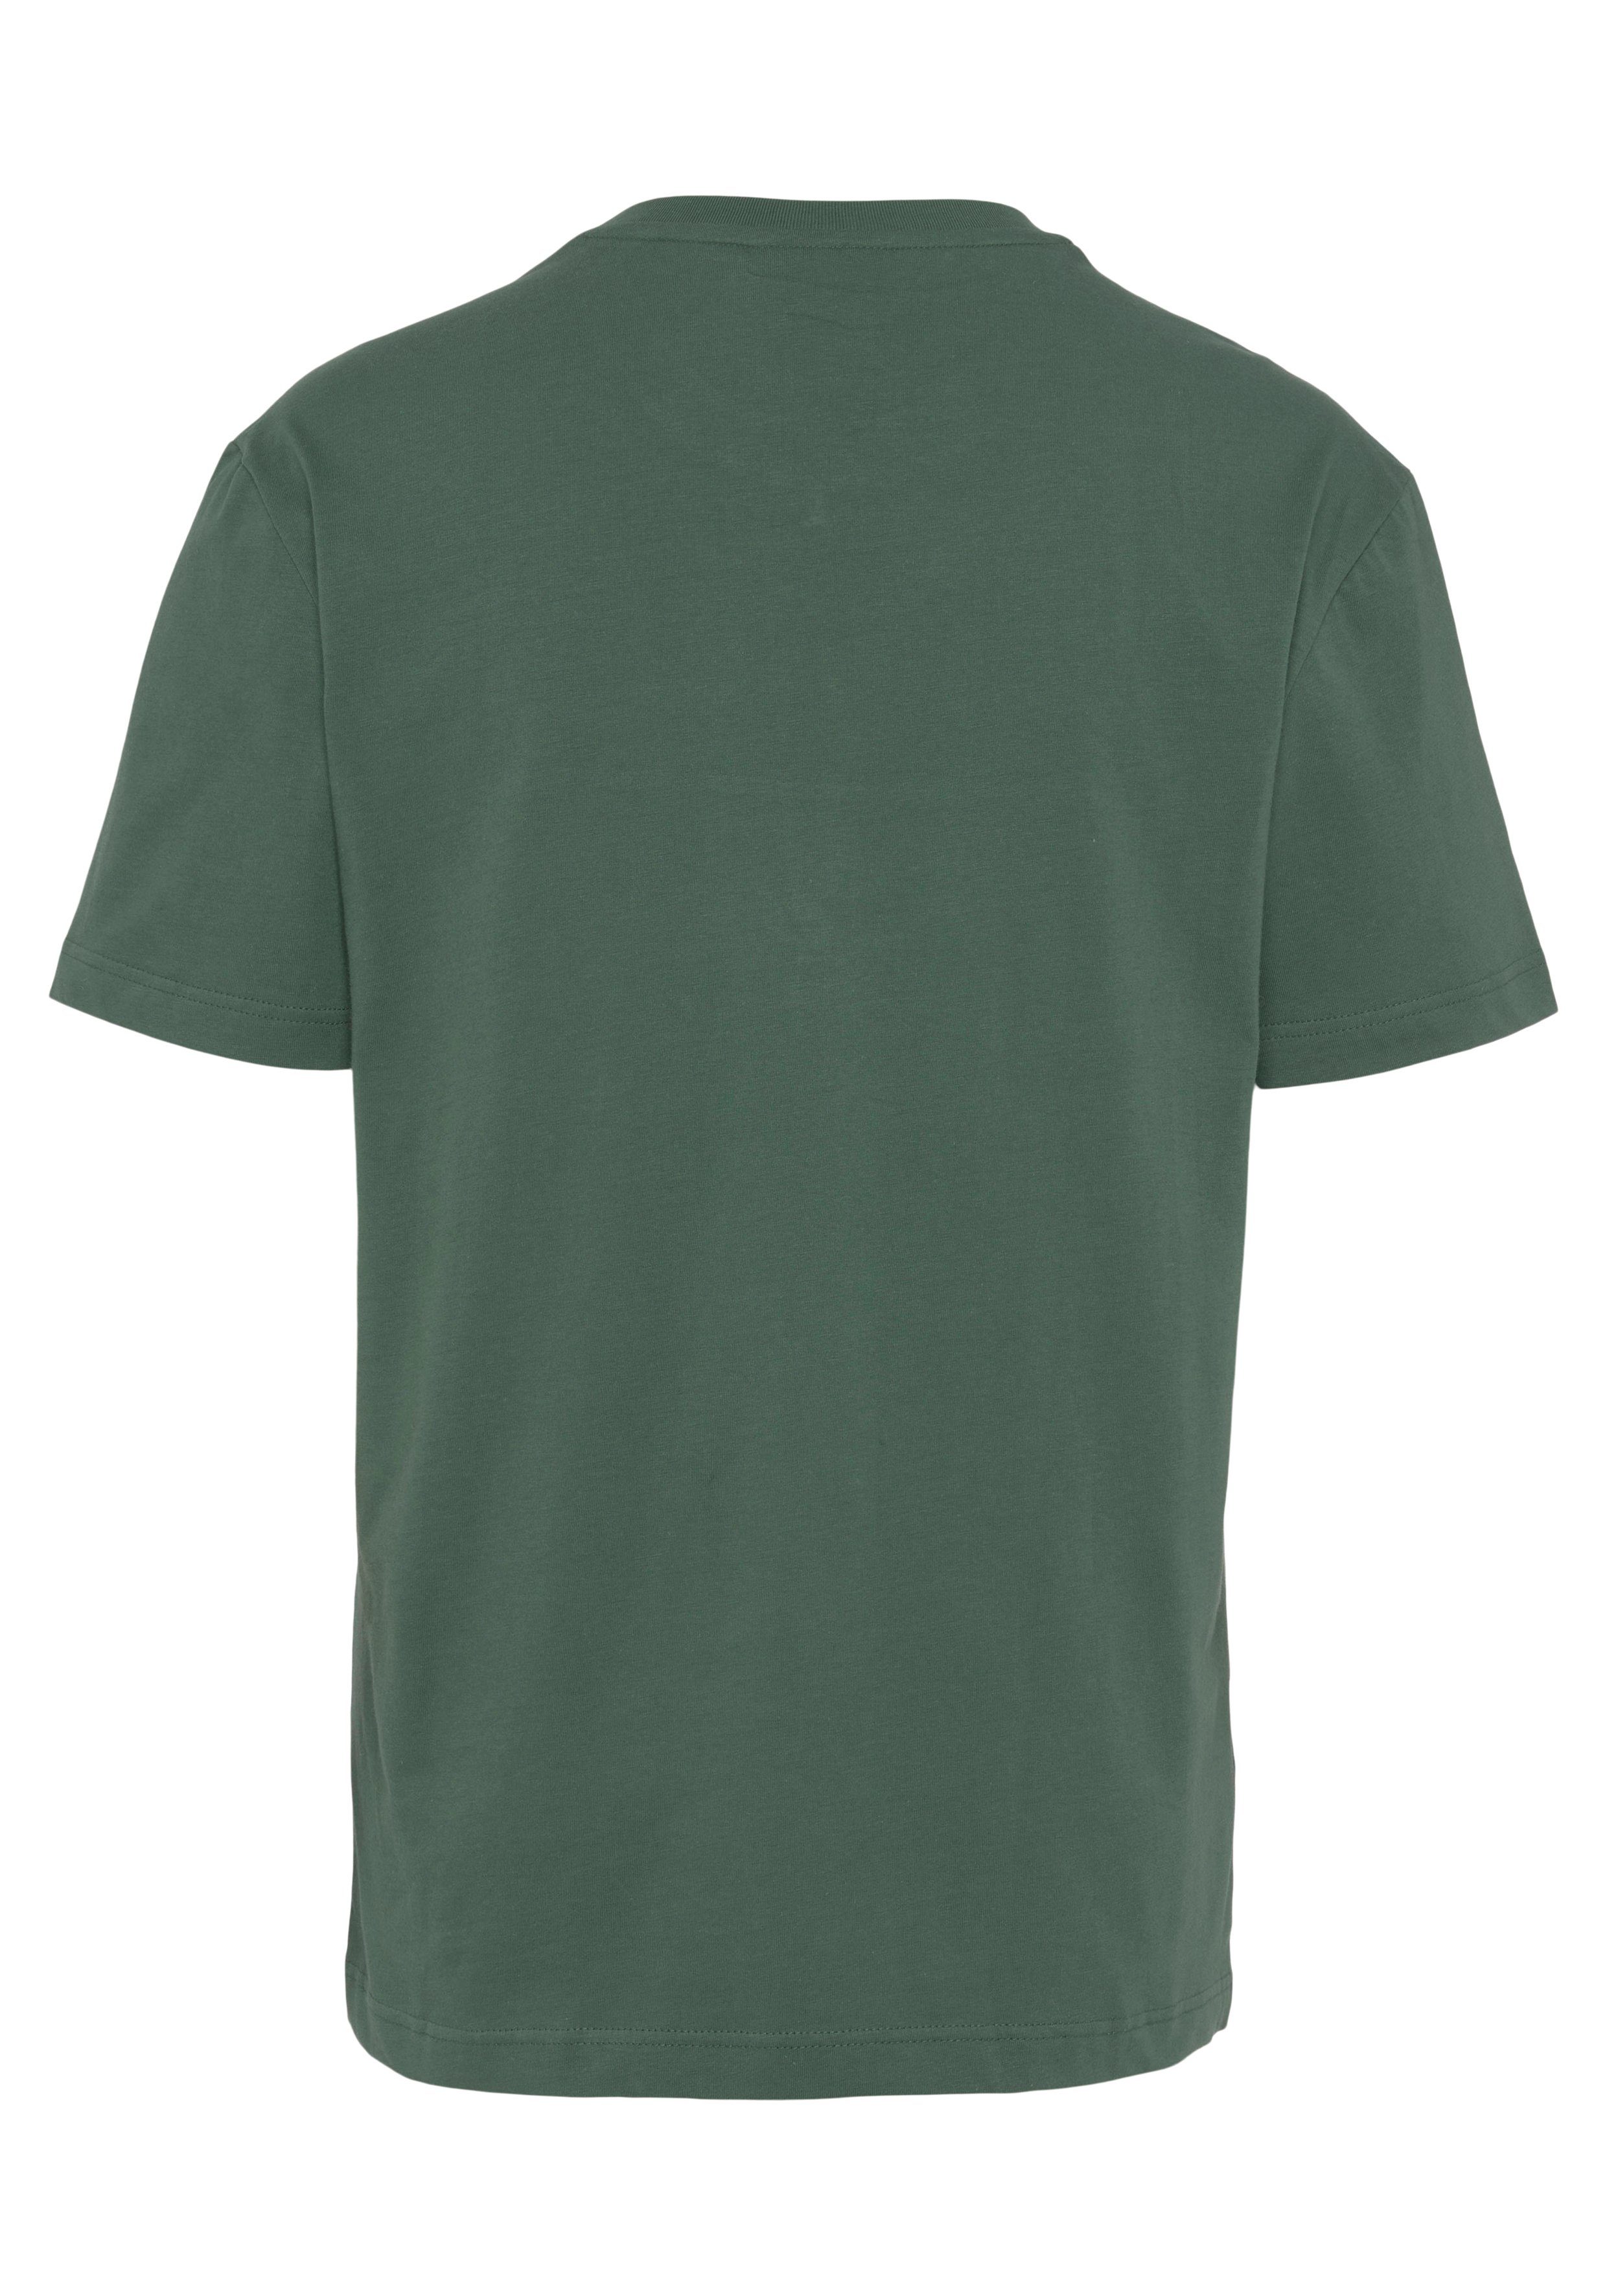 großem Lacoste der T-Shirt Print grün-marine Brust T-SHIRT auf mit